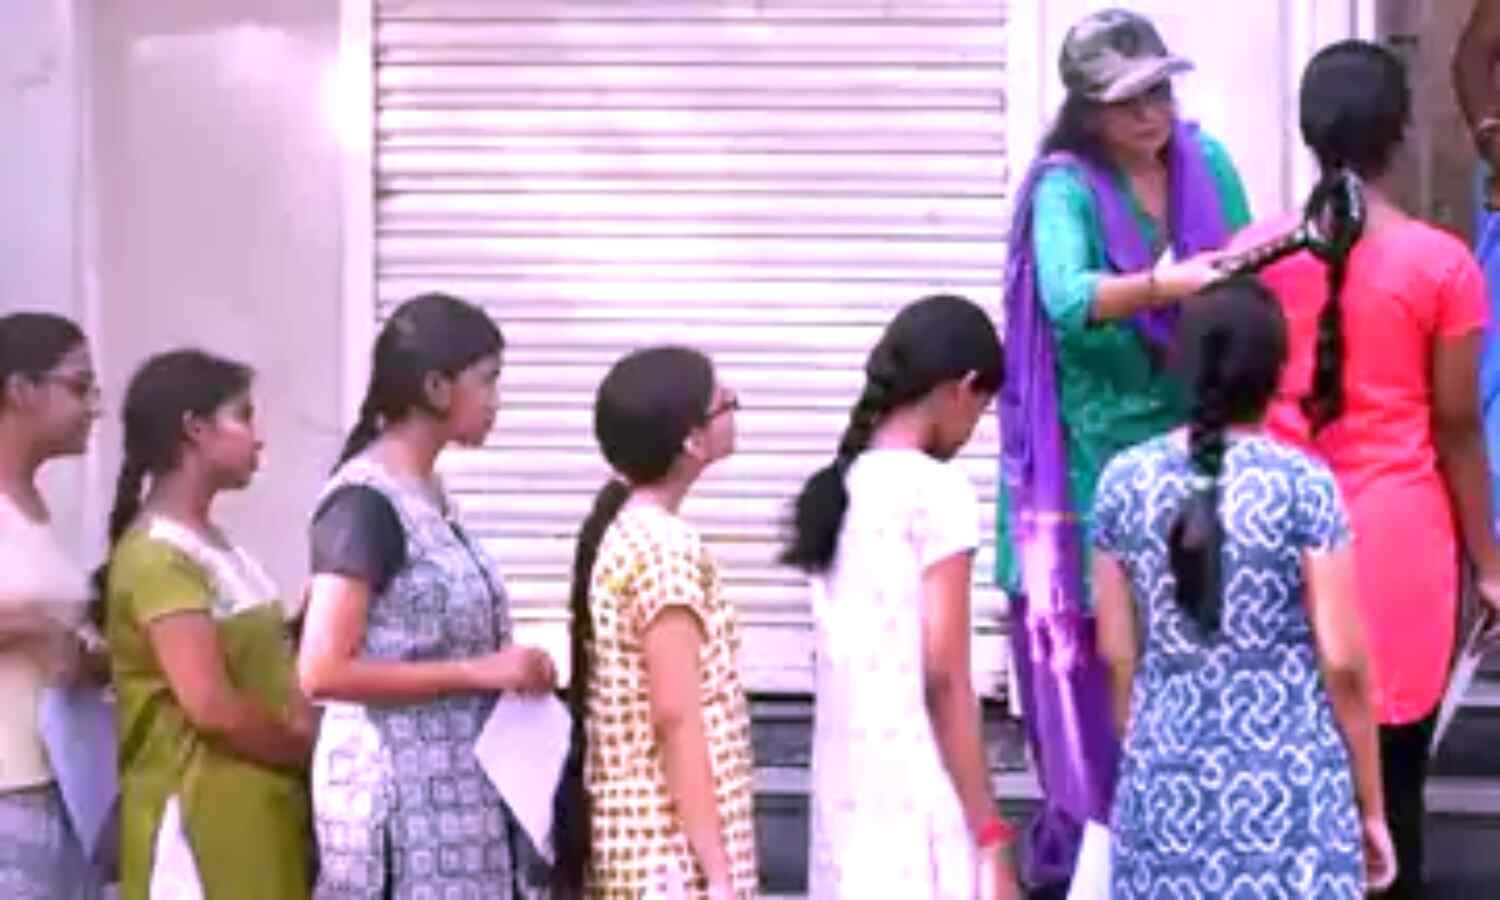 NEET Dress Code Controversy : नीट परीक्षा में छात्राओं को इनरवियर उतारने पर किया गया मजबूर, पांच आरोपी महिलाएं गिरफ्तार